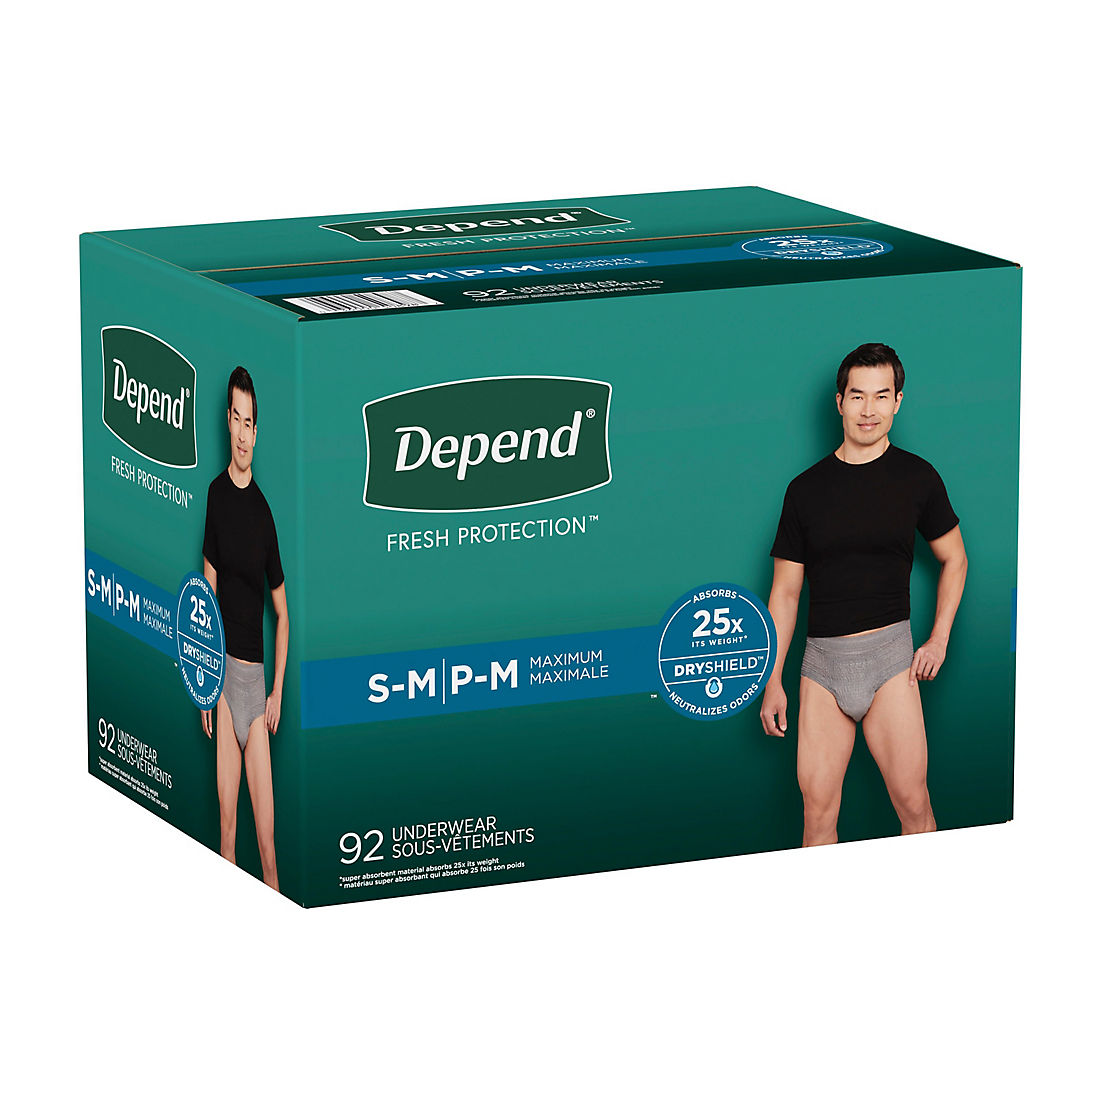 Buy Incontinence Underwear & Briefs Online - For Men, Women